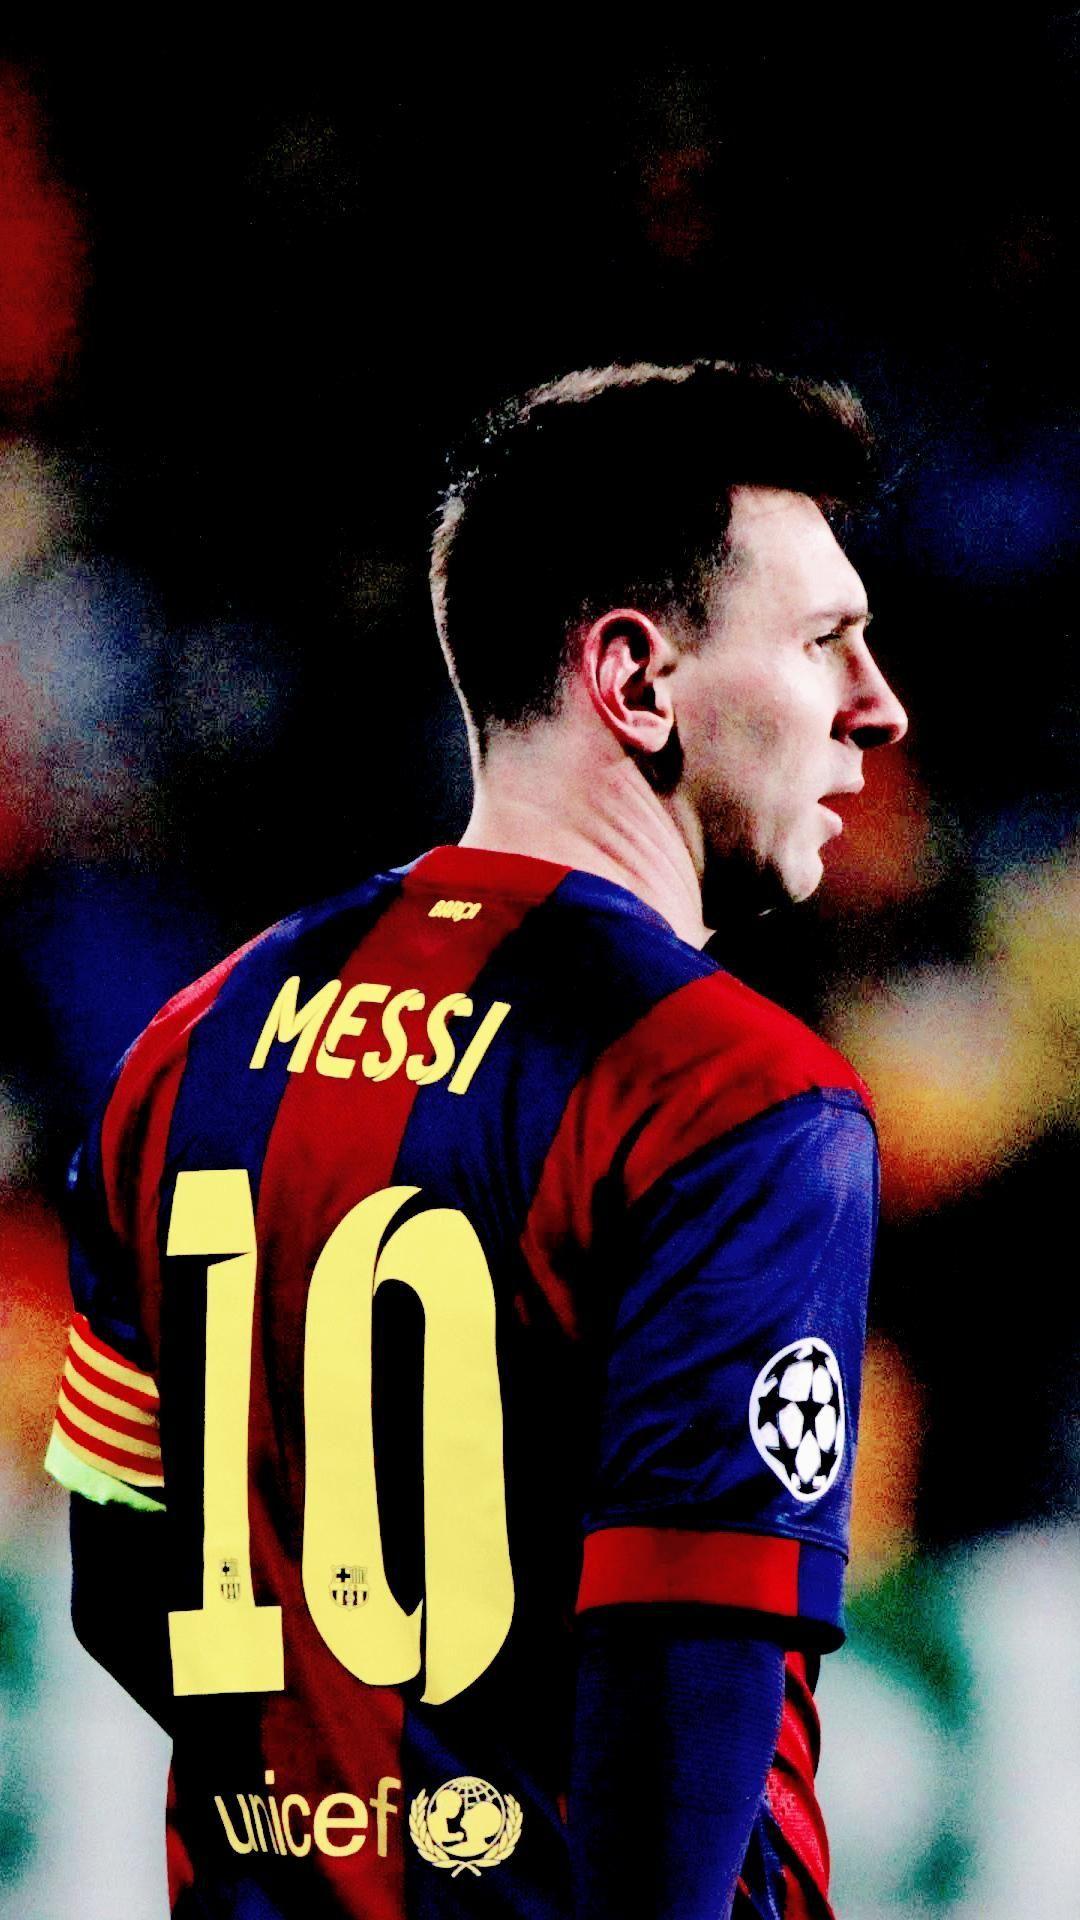 Tải xuống những bức ảnh nền điện thoại đẹp về Lionel Messi? Hãy đến với chúng tôi! Những bức ảnh độc đáo của Lionel Messi với chất lượng cao là một điều tuyệt vời để trang trí cho điện thoại của bạn.